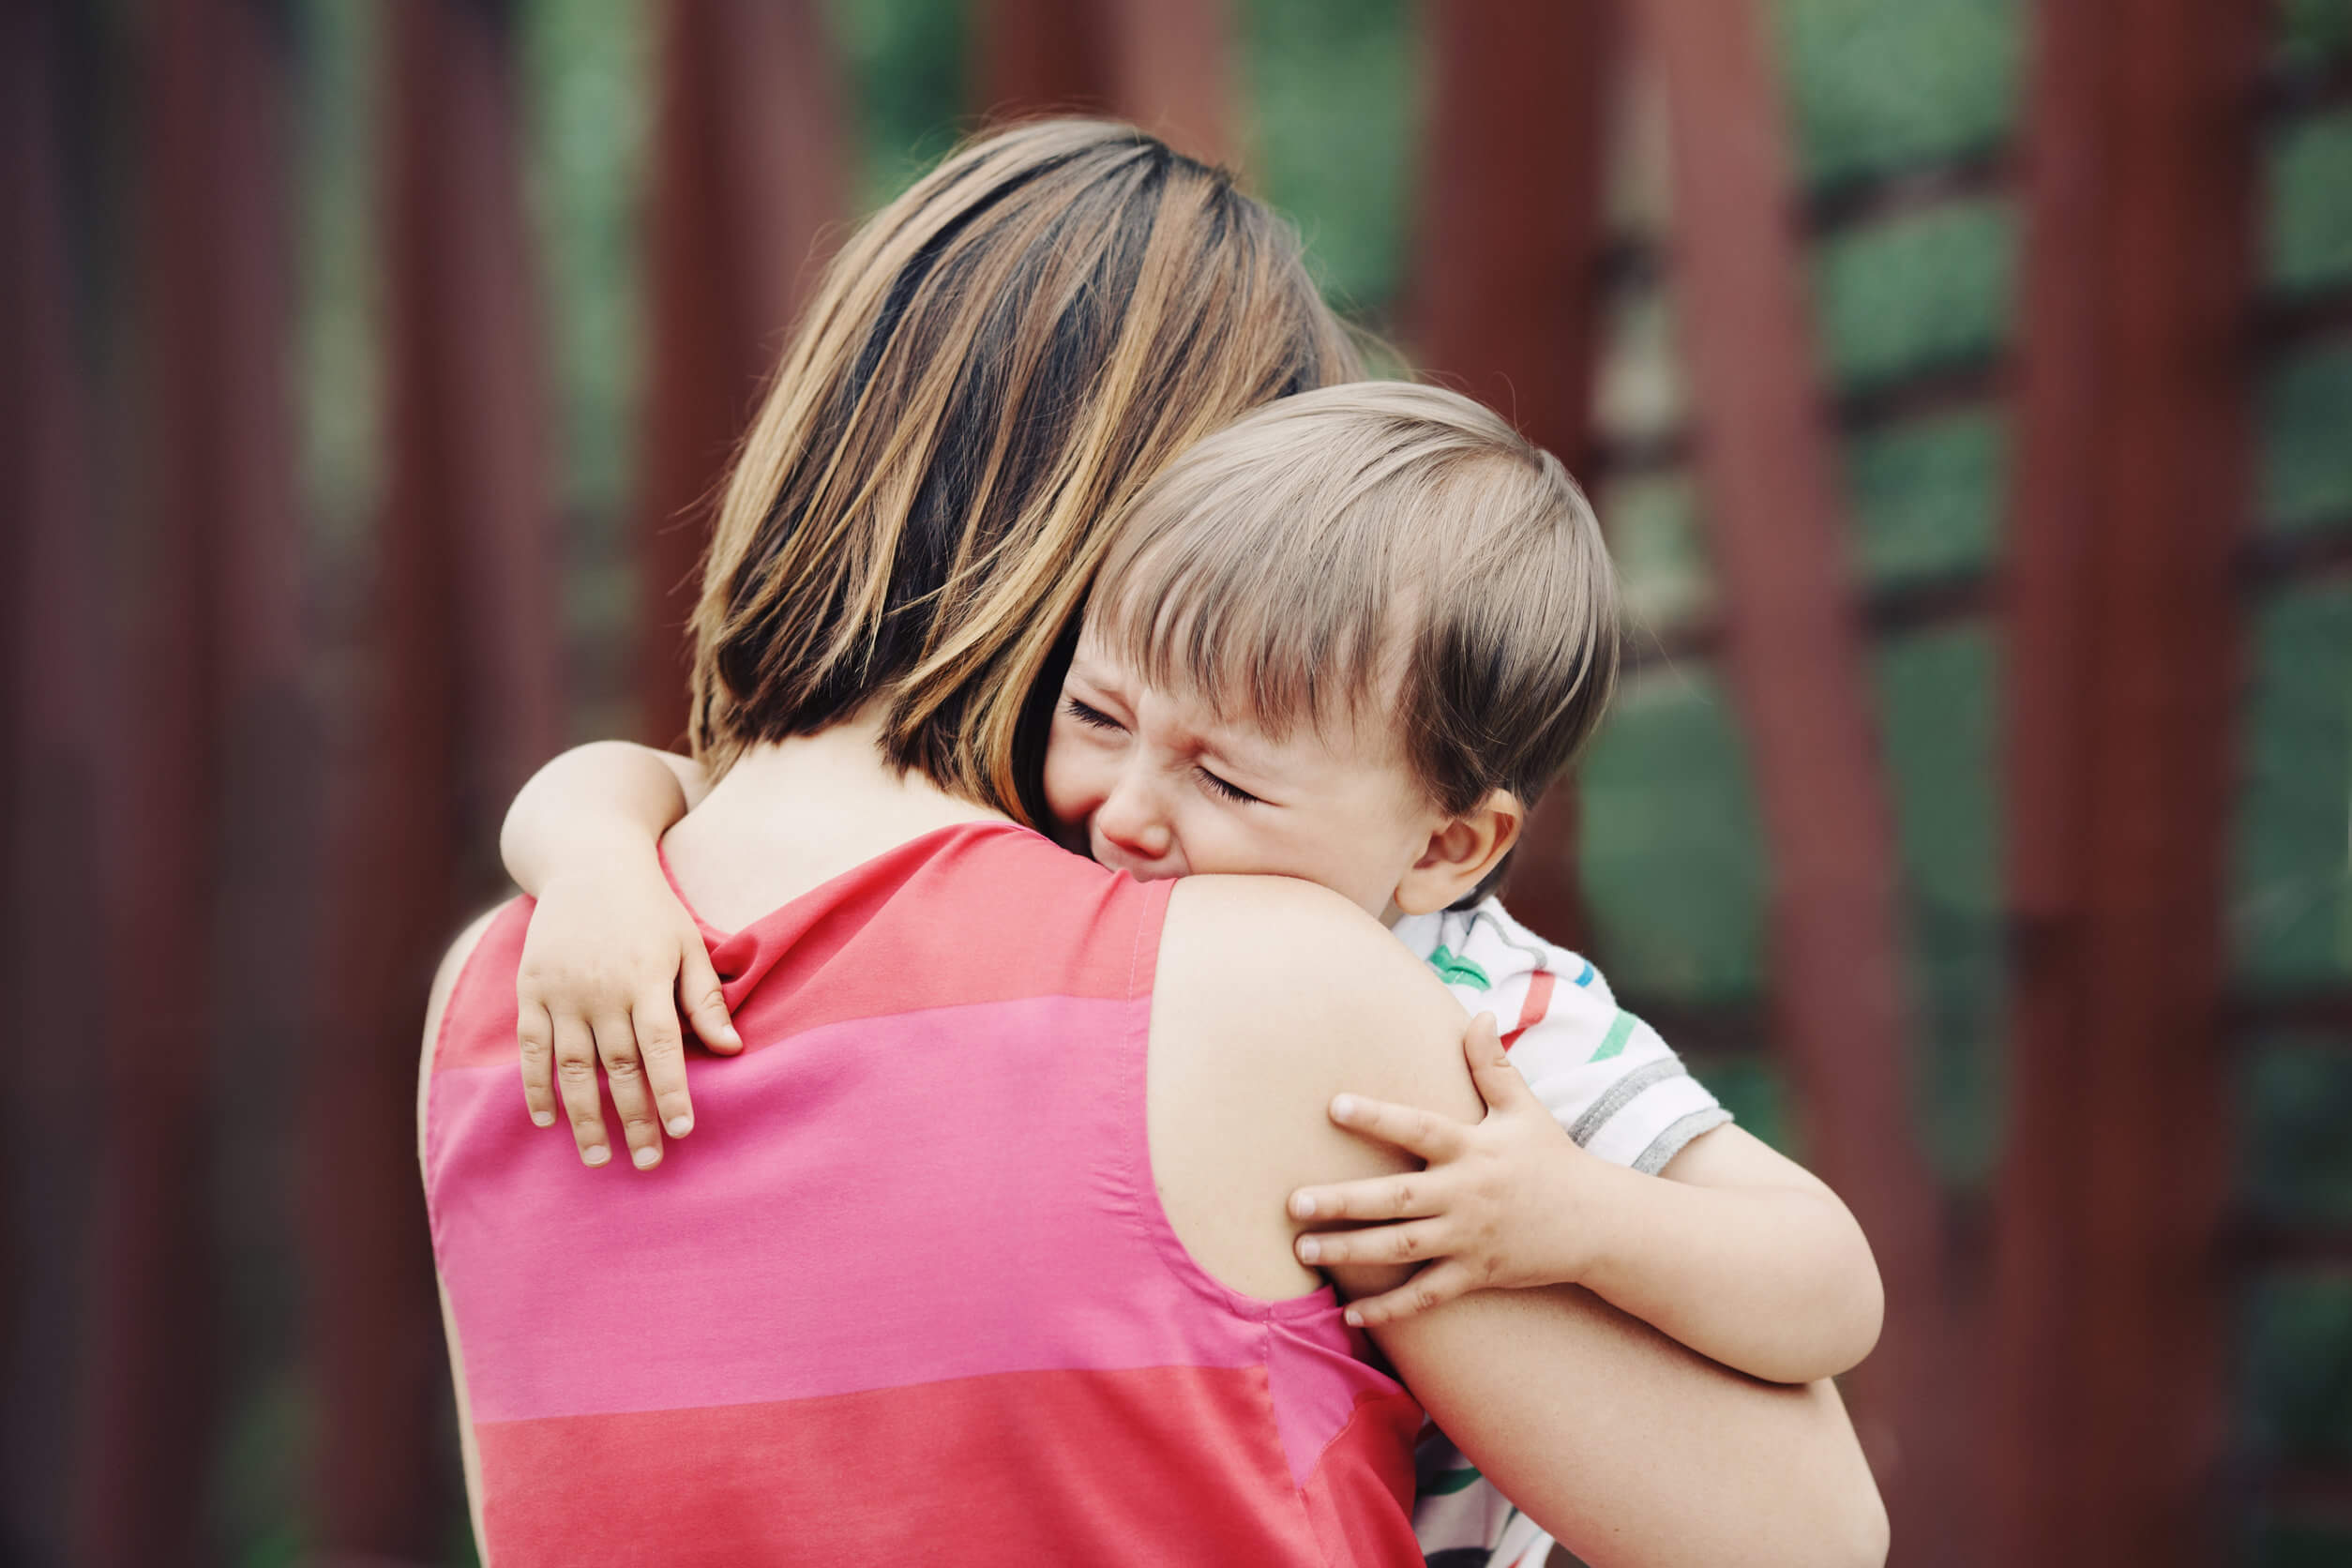 Abbracciare il bambino che piange per convalidare i suoi sentimenti.